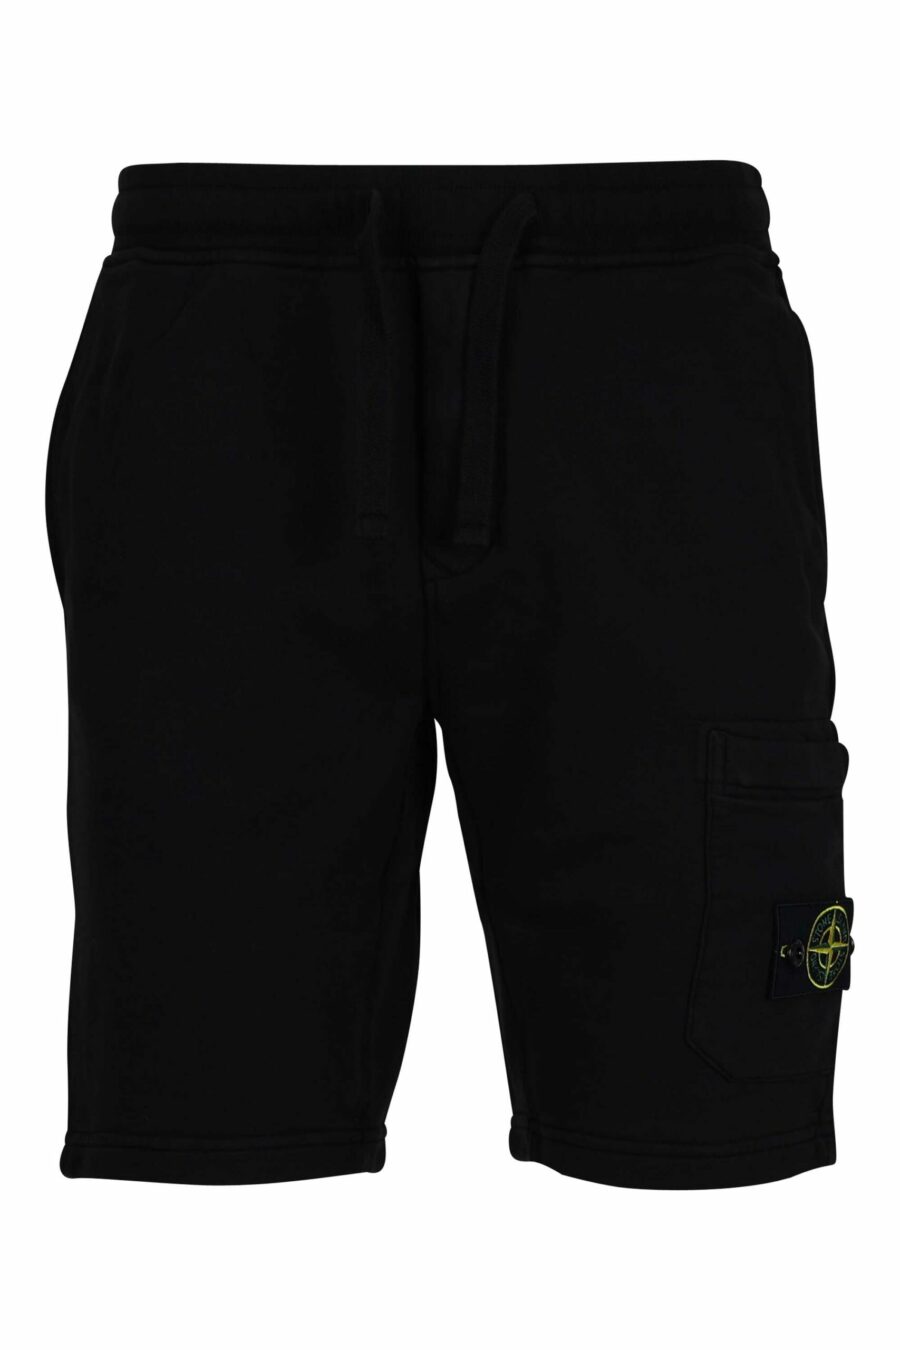 Pantalón de chándal corto negro con logo parche brújula - 8052572852916 scaled